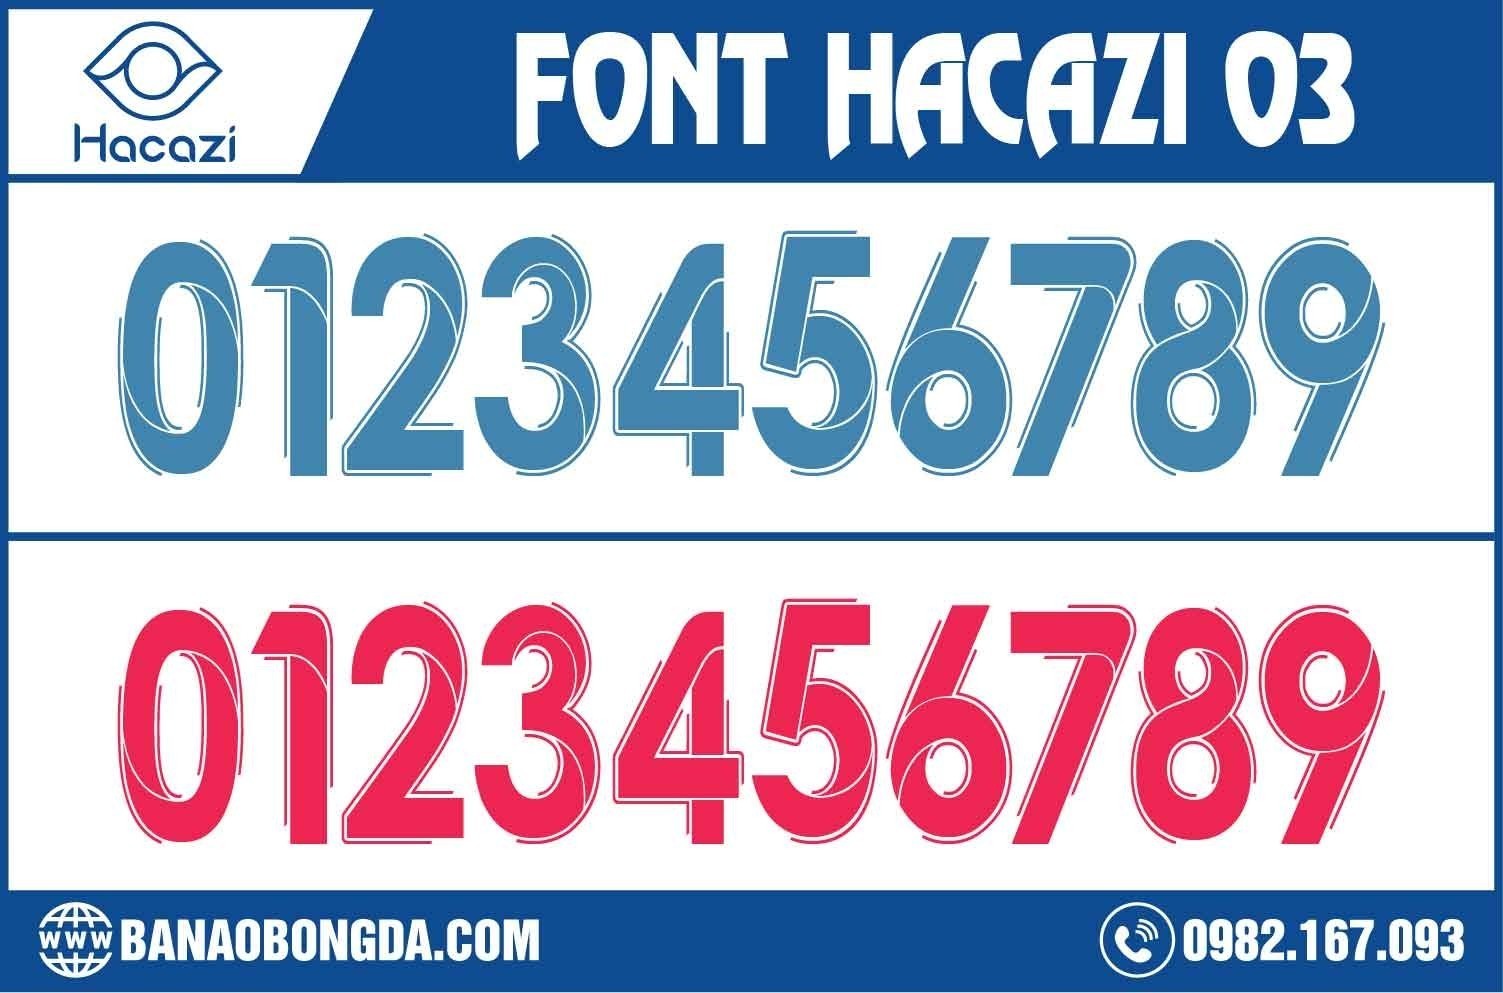 Shop Hacazi Sport đã hé lộ bộ font số áo bóng đá 03 độc quyền. Với hai gam màu mới đó chính là xanh MC và đỏ nhạt cùng đường nét có phần đơn giản nhưng cũng mang đến sự ấn tượng thu hút đông đảo người quan tâm. 